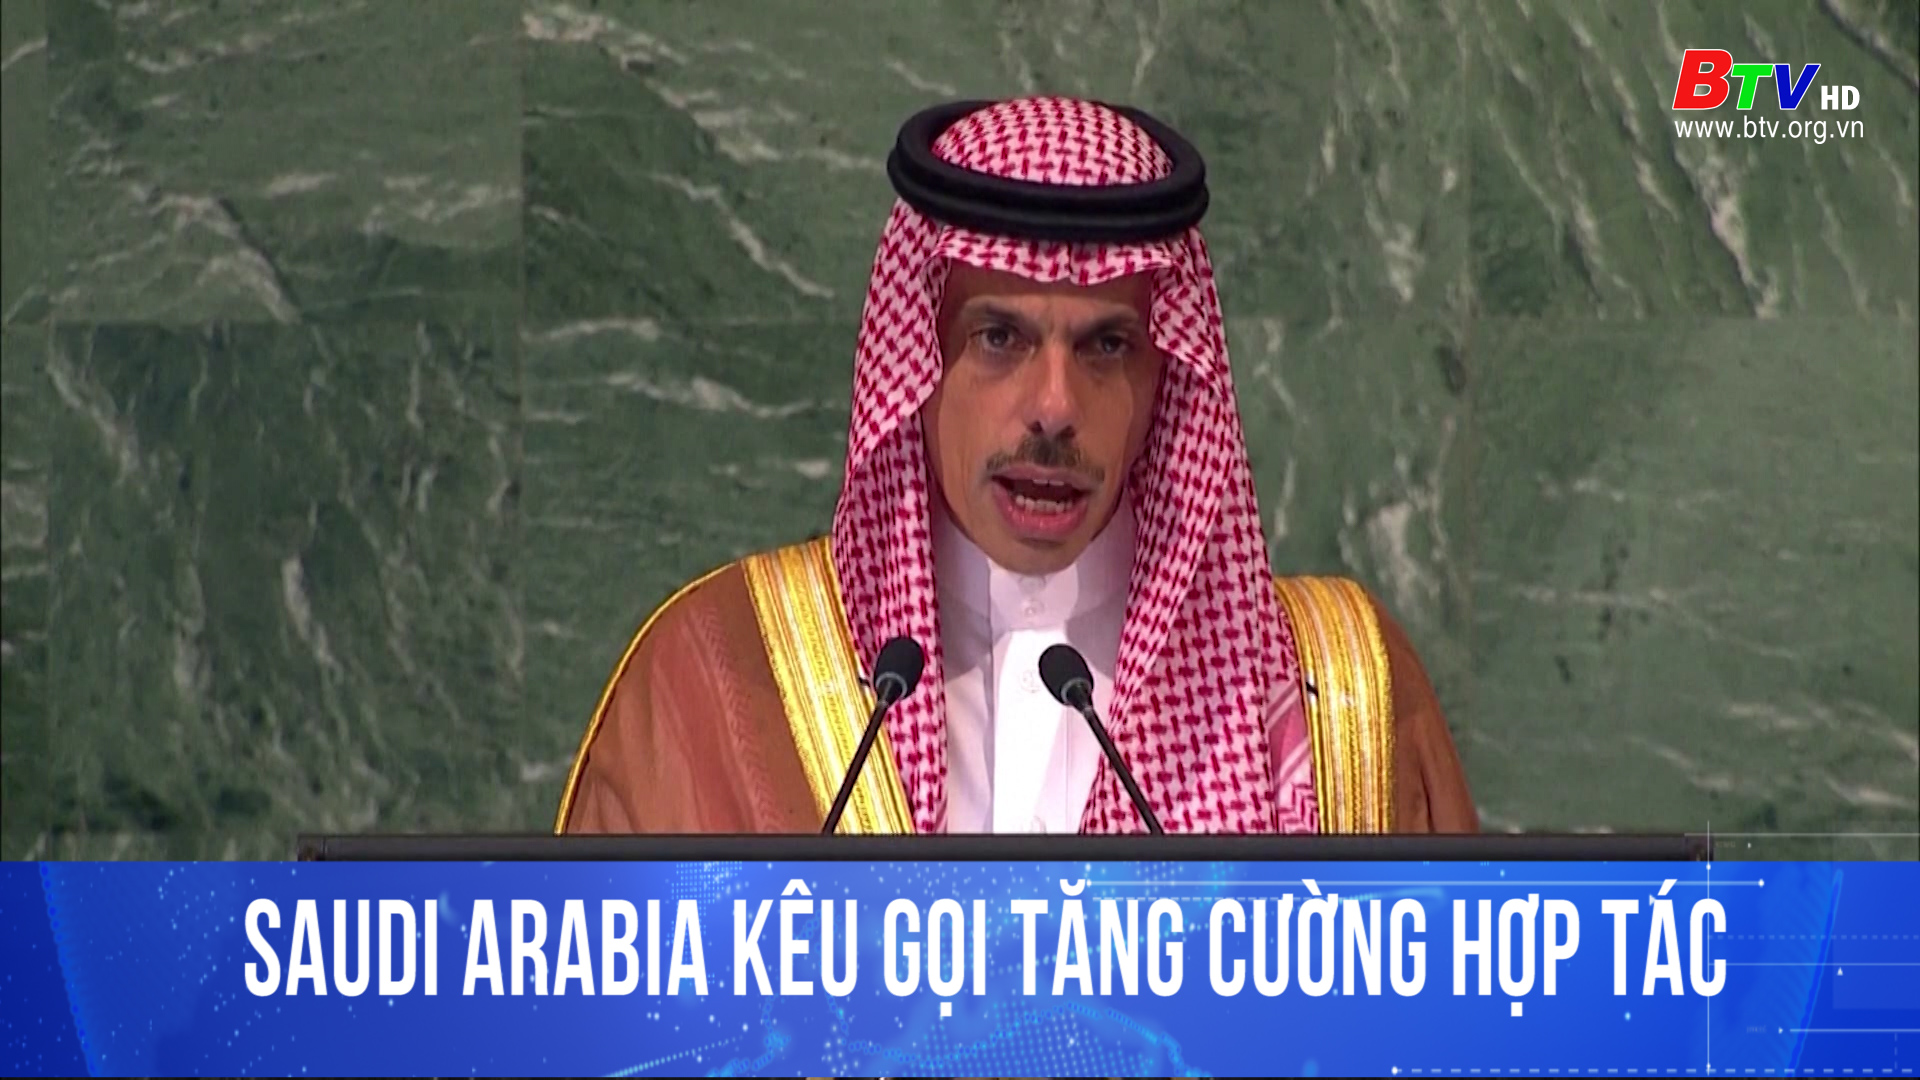 Saudi Arabia kêu gọi tăng cường hợp tác